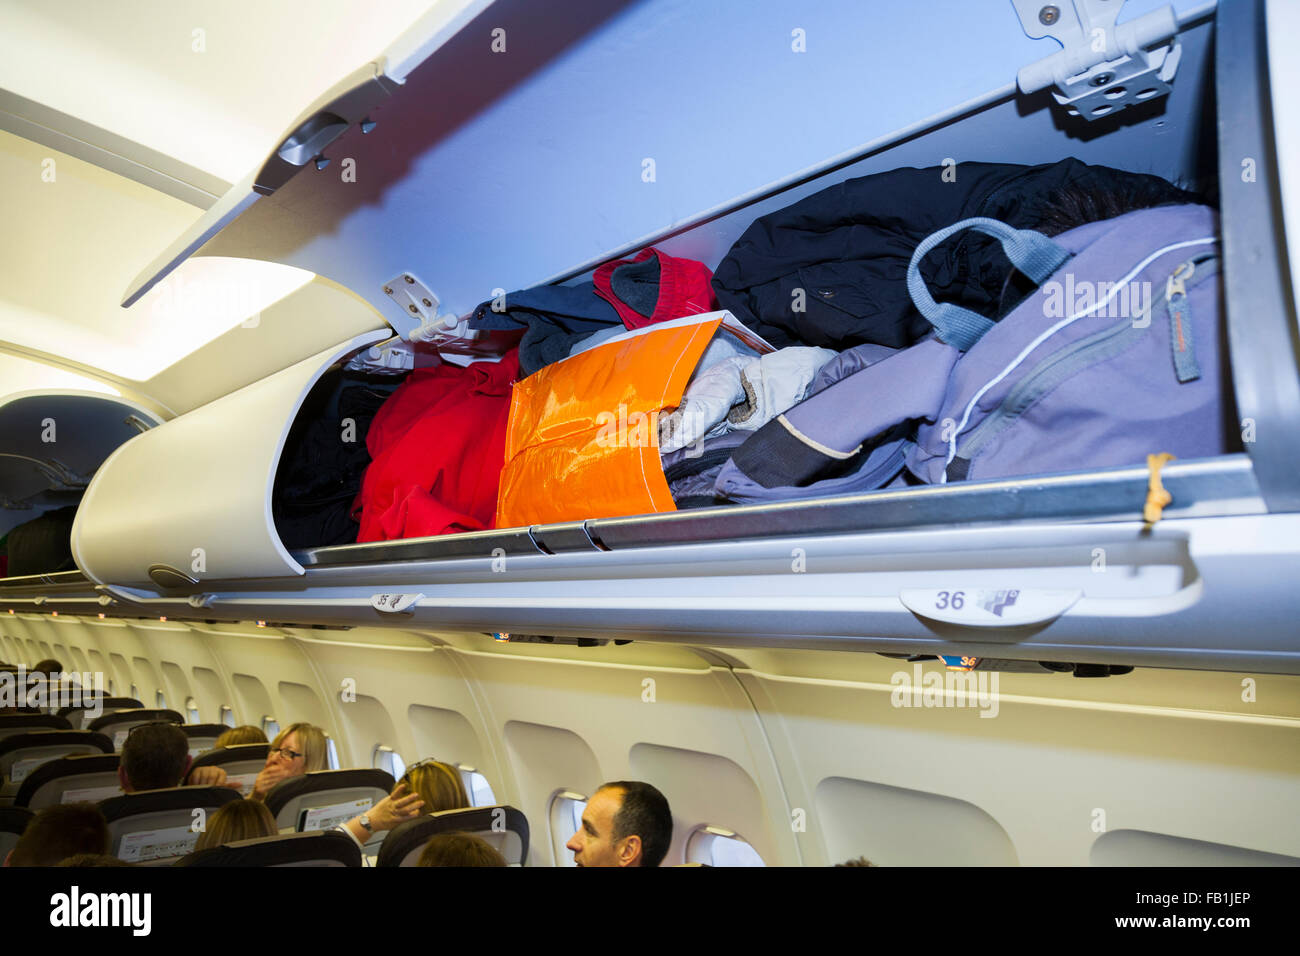 Obenliegende Passagier Spind / Schränke / Fach / Fächer für verstauen  Passagiere Taschen Gepäck im Flugzeug Airbus Kabine Stockfotografie - Alamy